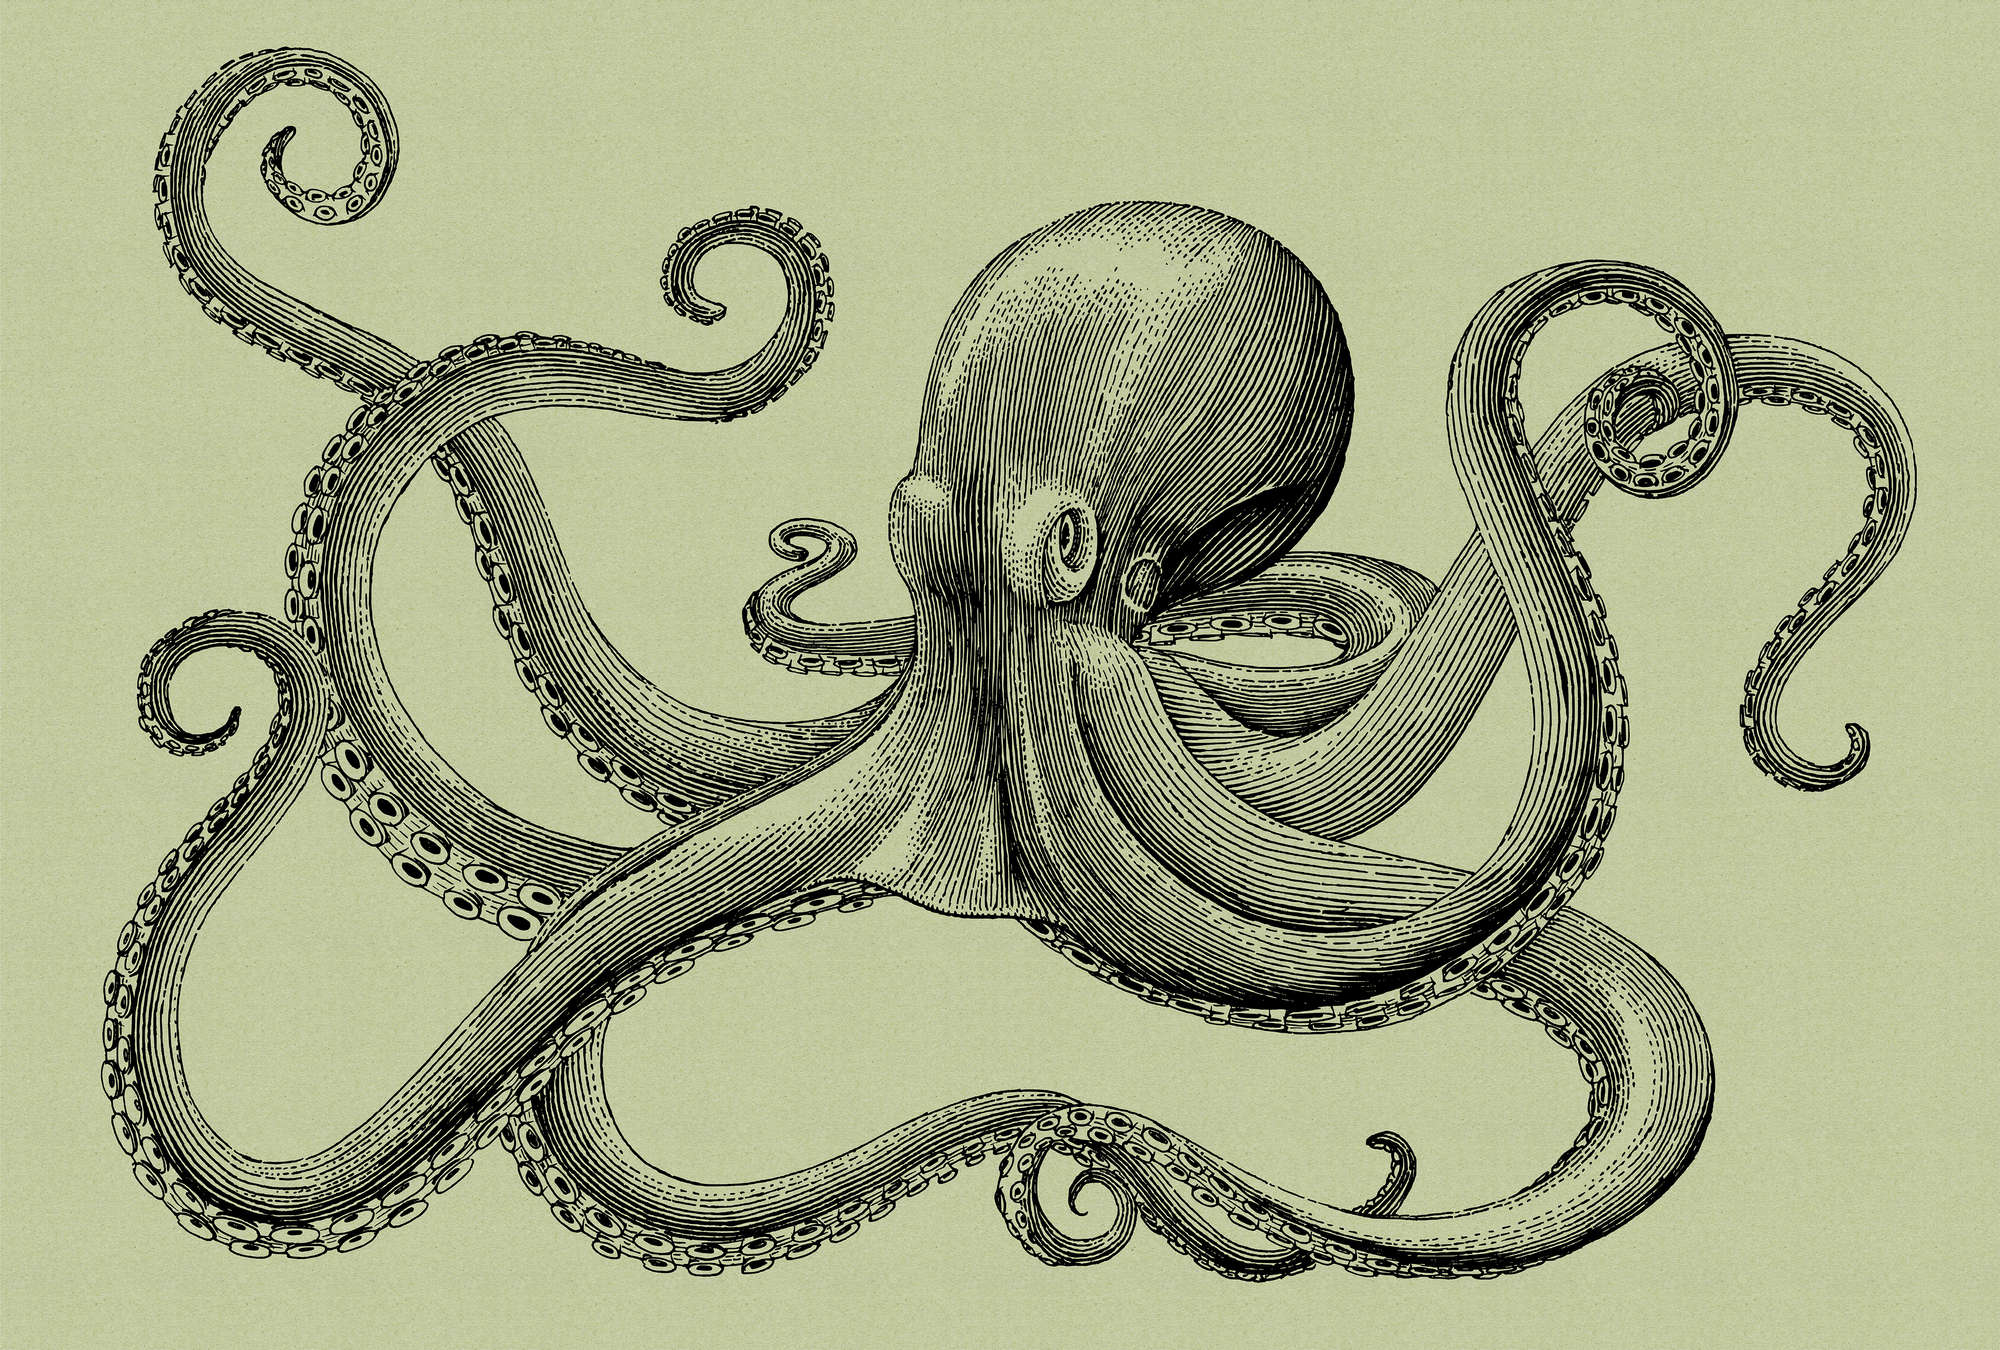             Jules 3 - Octopus Onderlaag behang Schetsstijl & Vintage Look - Karton Textuur - Groen, Zwart | Premium Smooth Vliesbehang
        